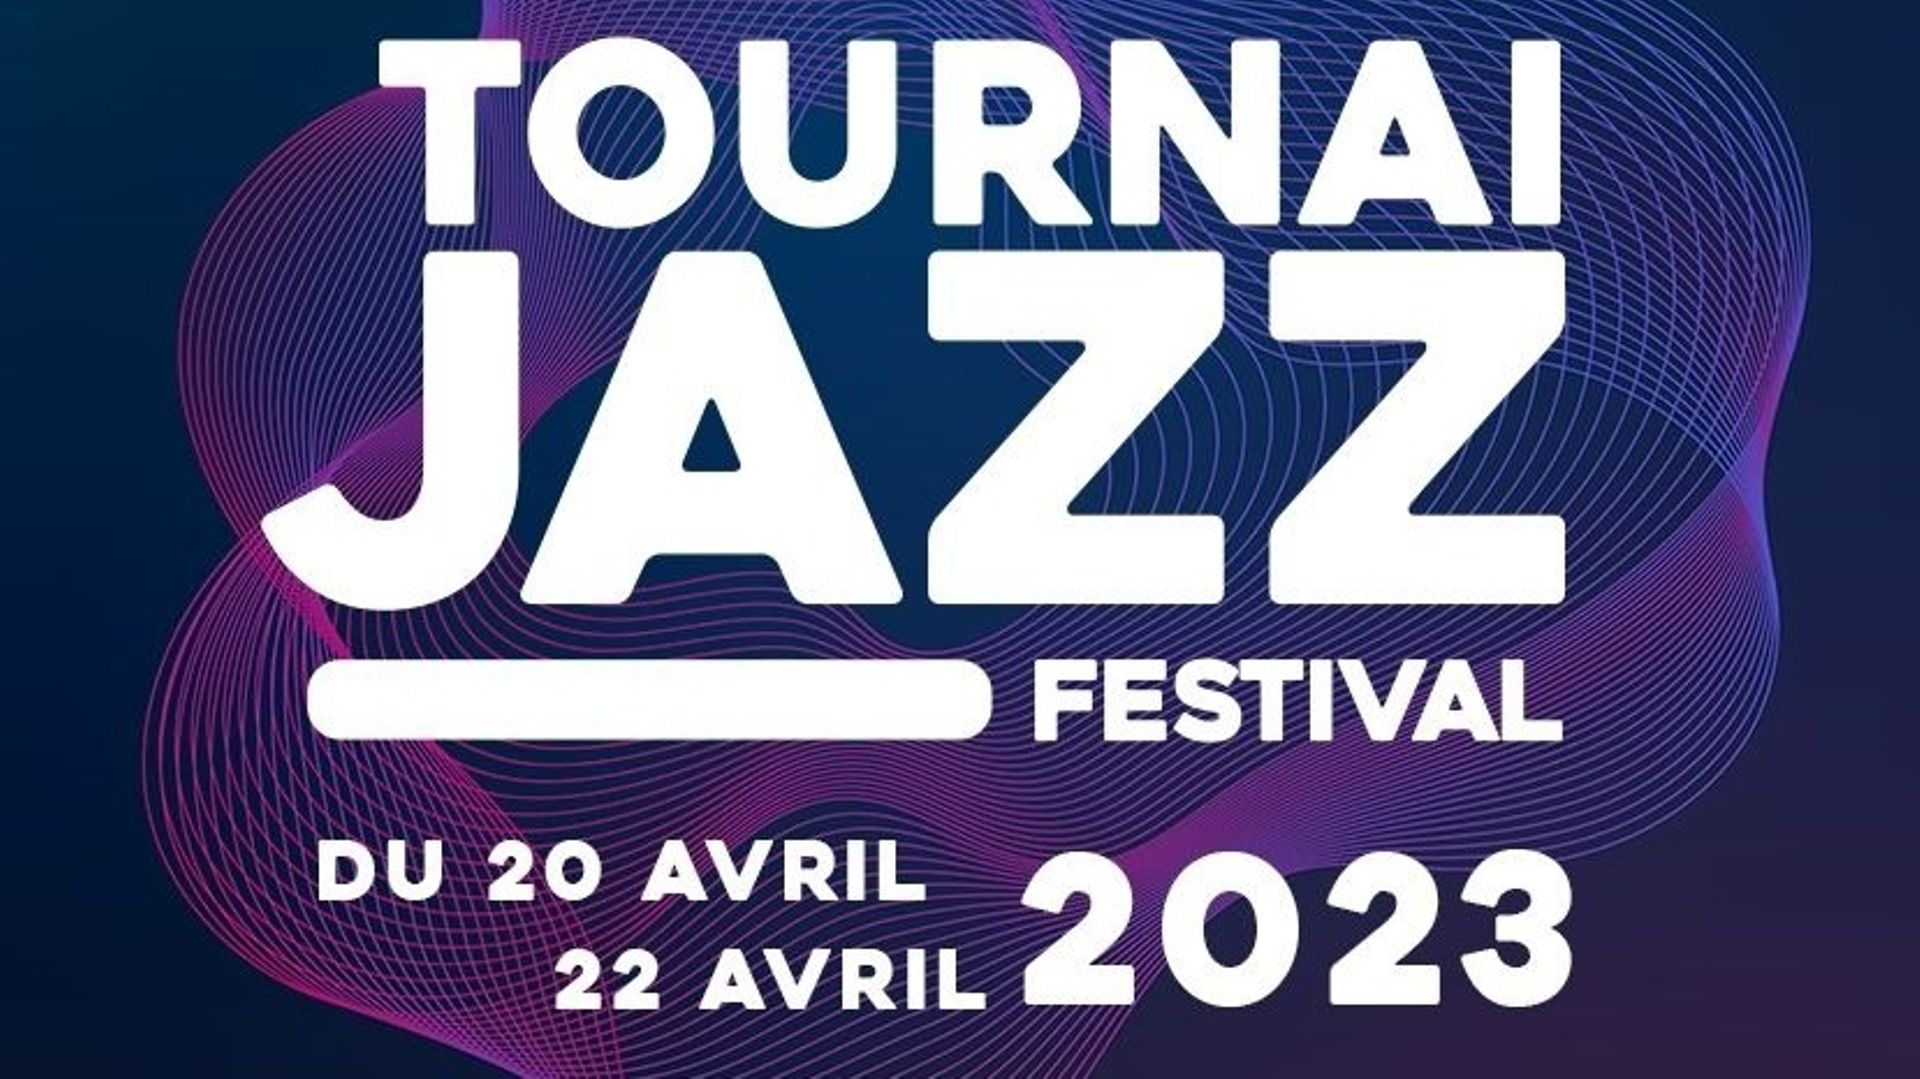 Le Tournai Jazz Festival se déroulera du 20 au 22 avril 2023.
